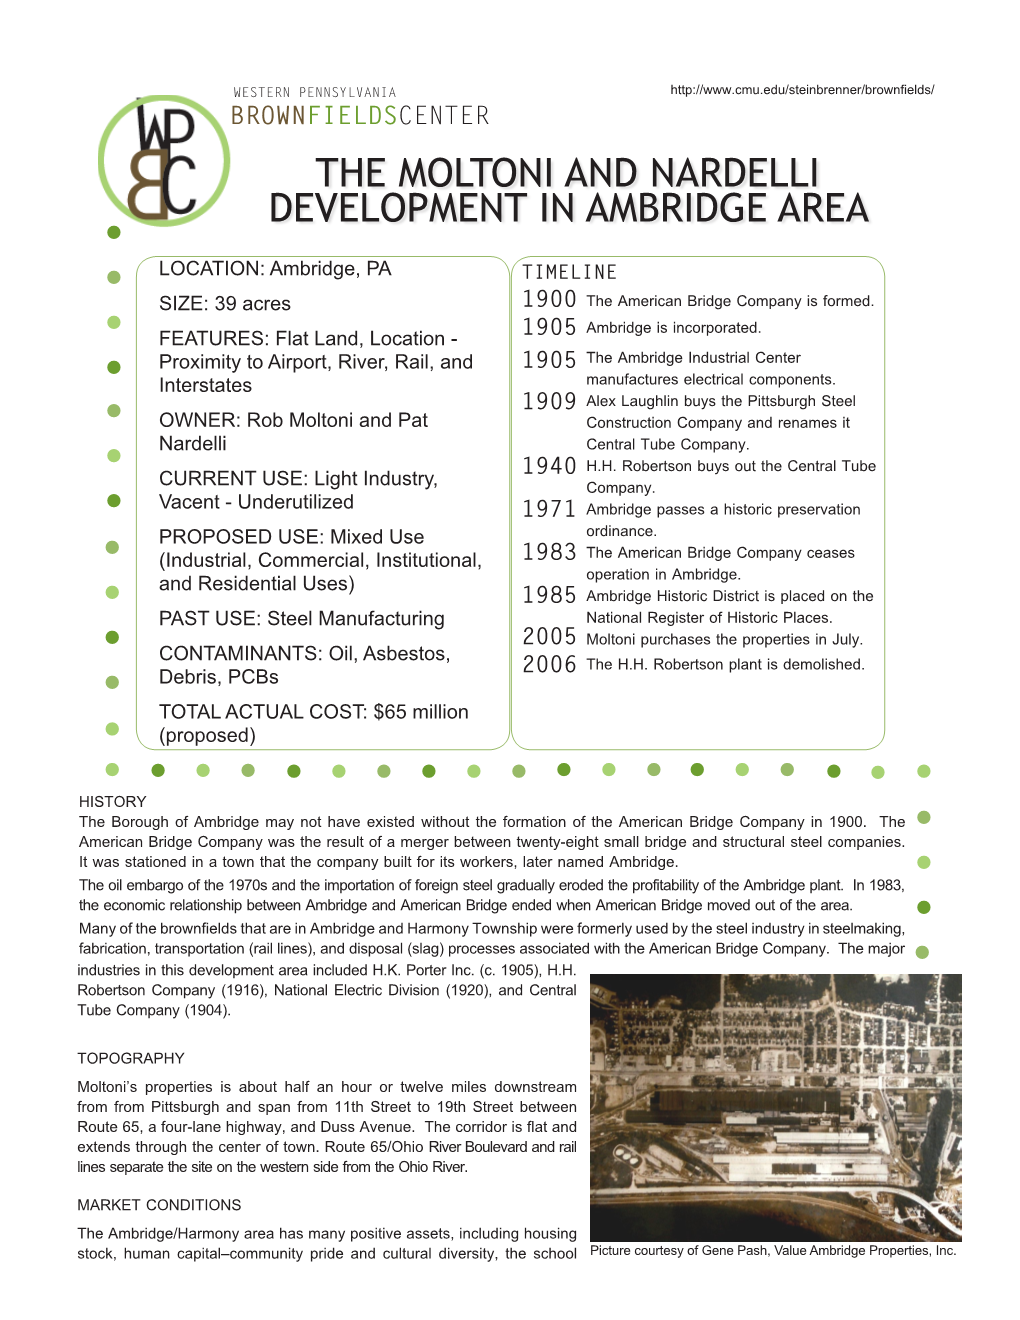 The Moltoni and Nardelli Development in Ambridge Area